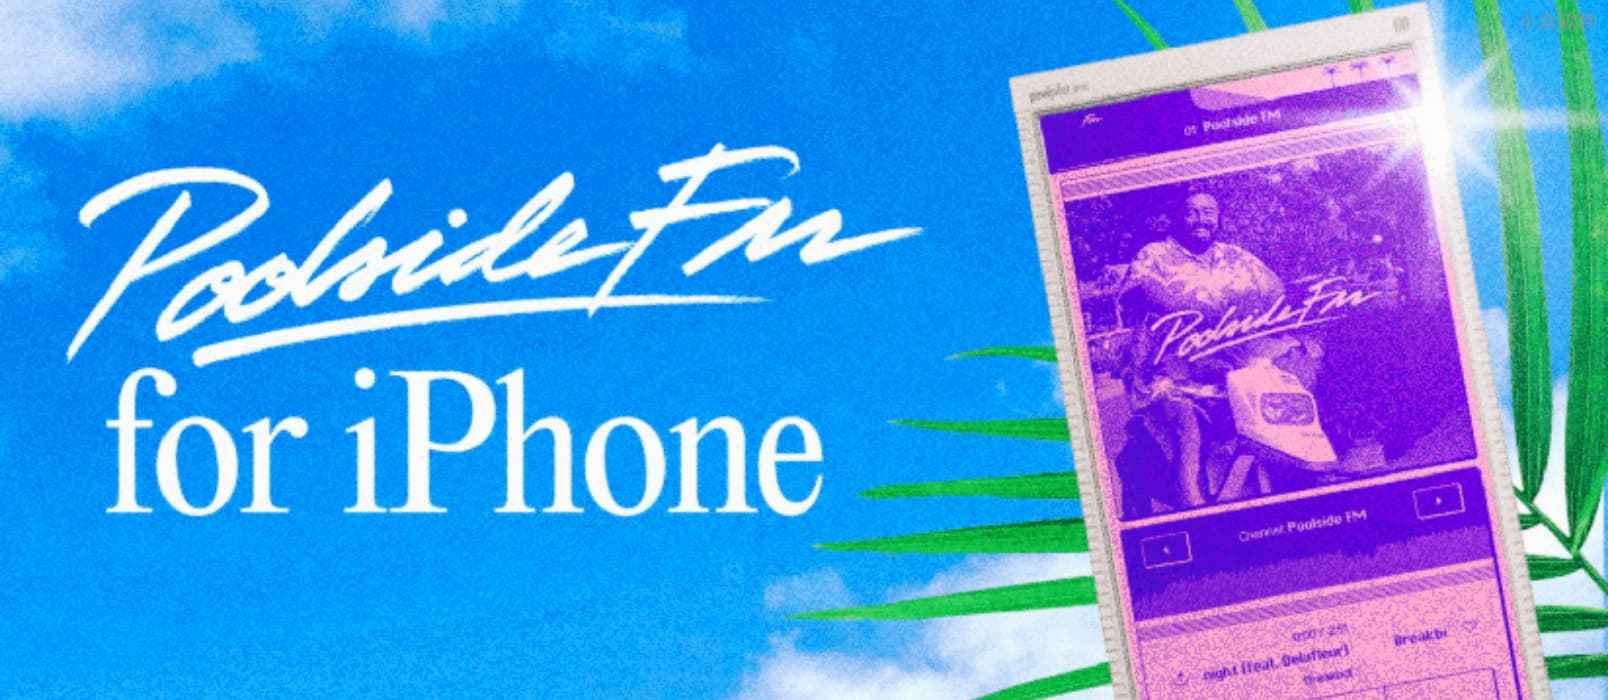 那个好听的「最夏日复古音乐电台」 Poolside FM 发布了 iPhone 版本